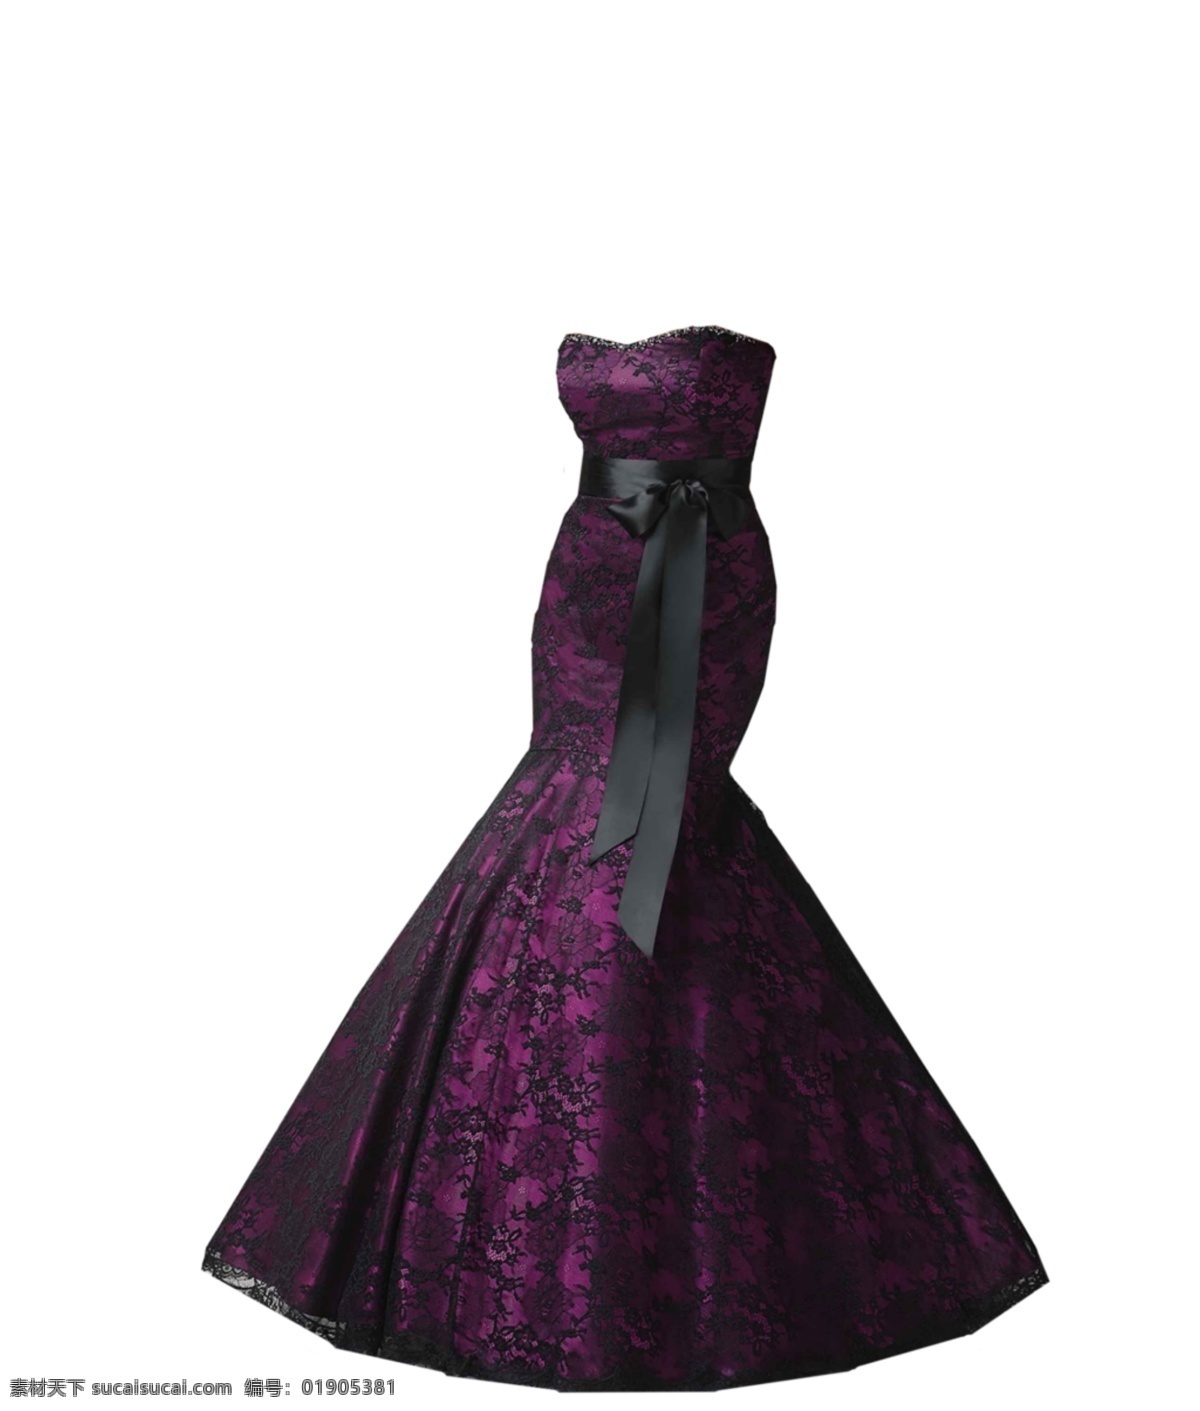 紫色 塑身 连衣裙 免 抠 透明 图形 连衣裙元素 海报 广告 连衣裙海报图